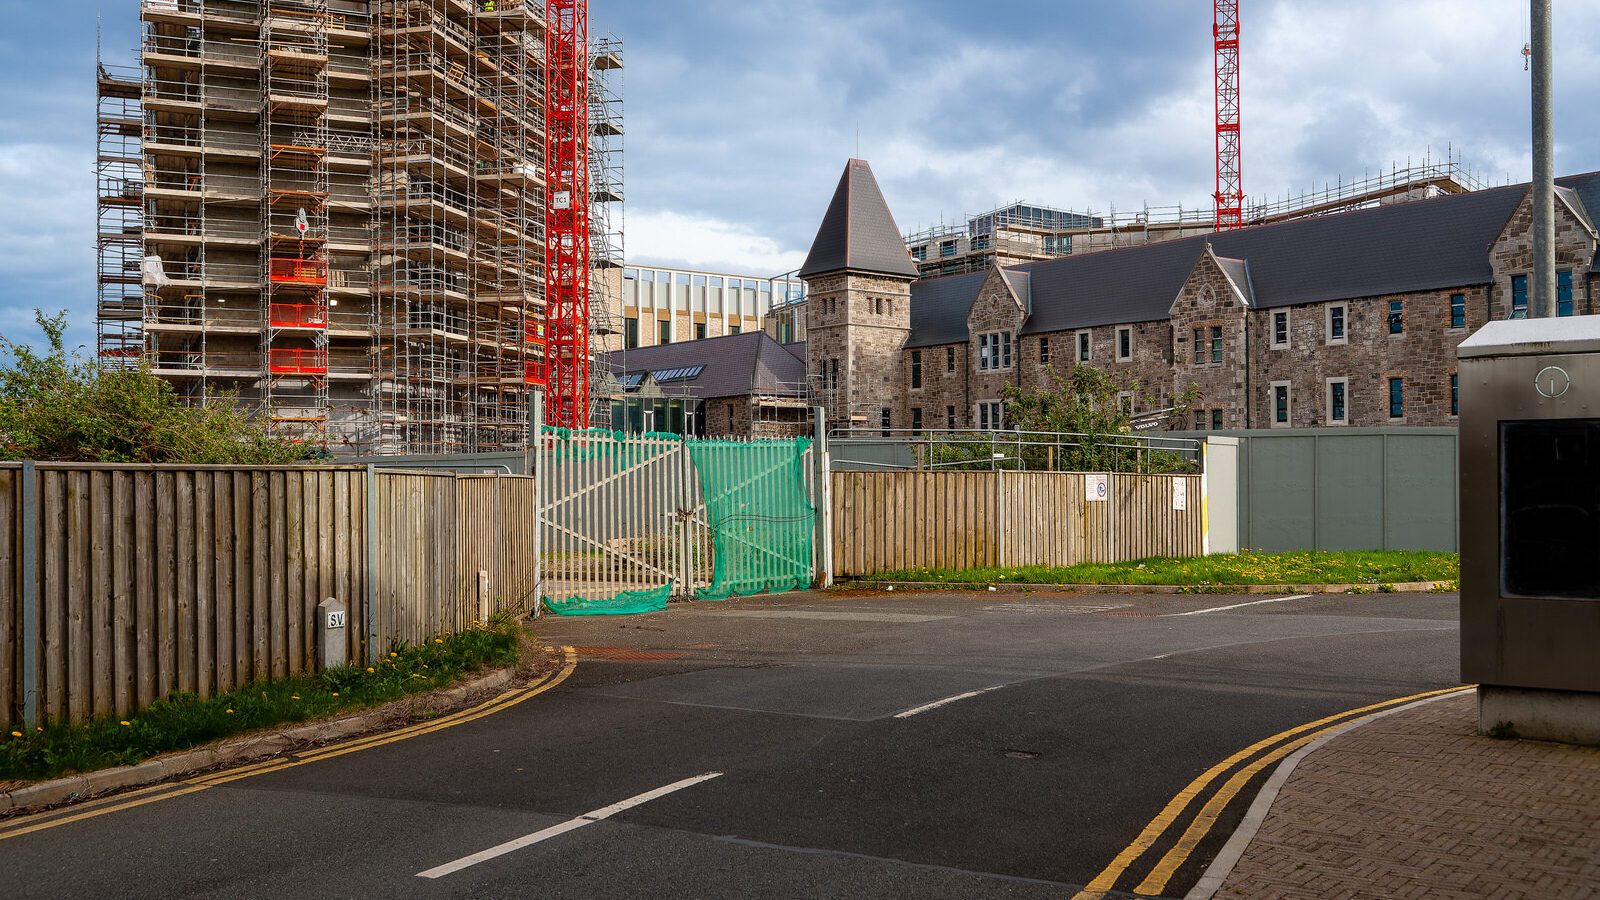 TU DUBLIN'S ACADEMIC HUB [A FLAGSHIP BUILDING UNDER CONSTRUCTION]-223819-1